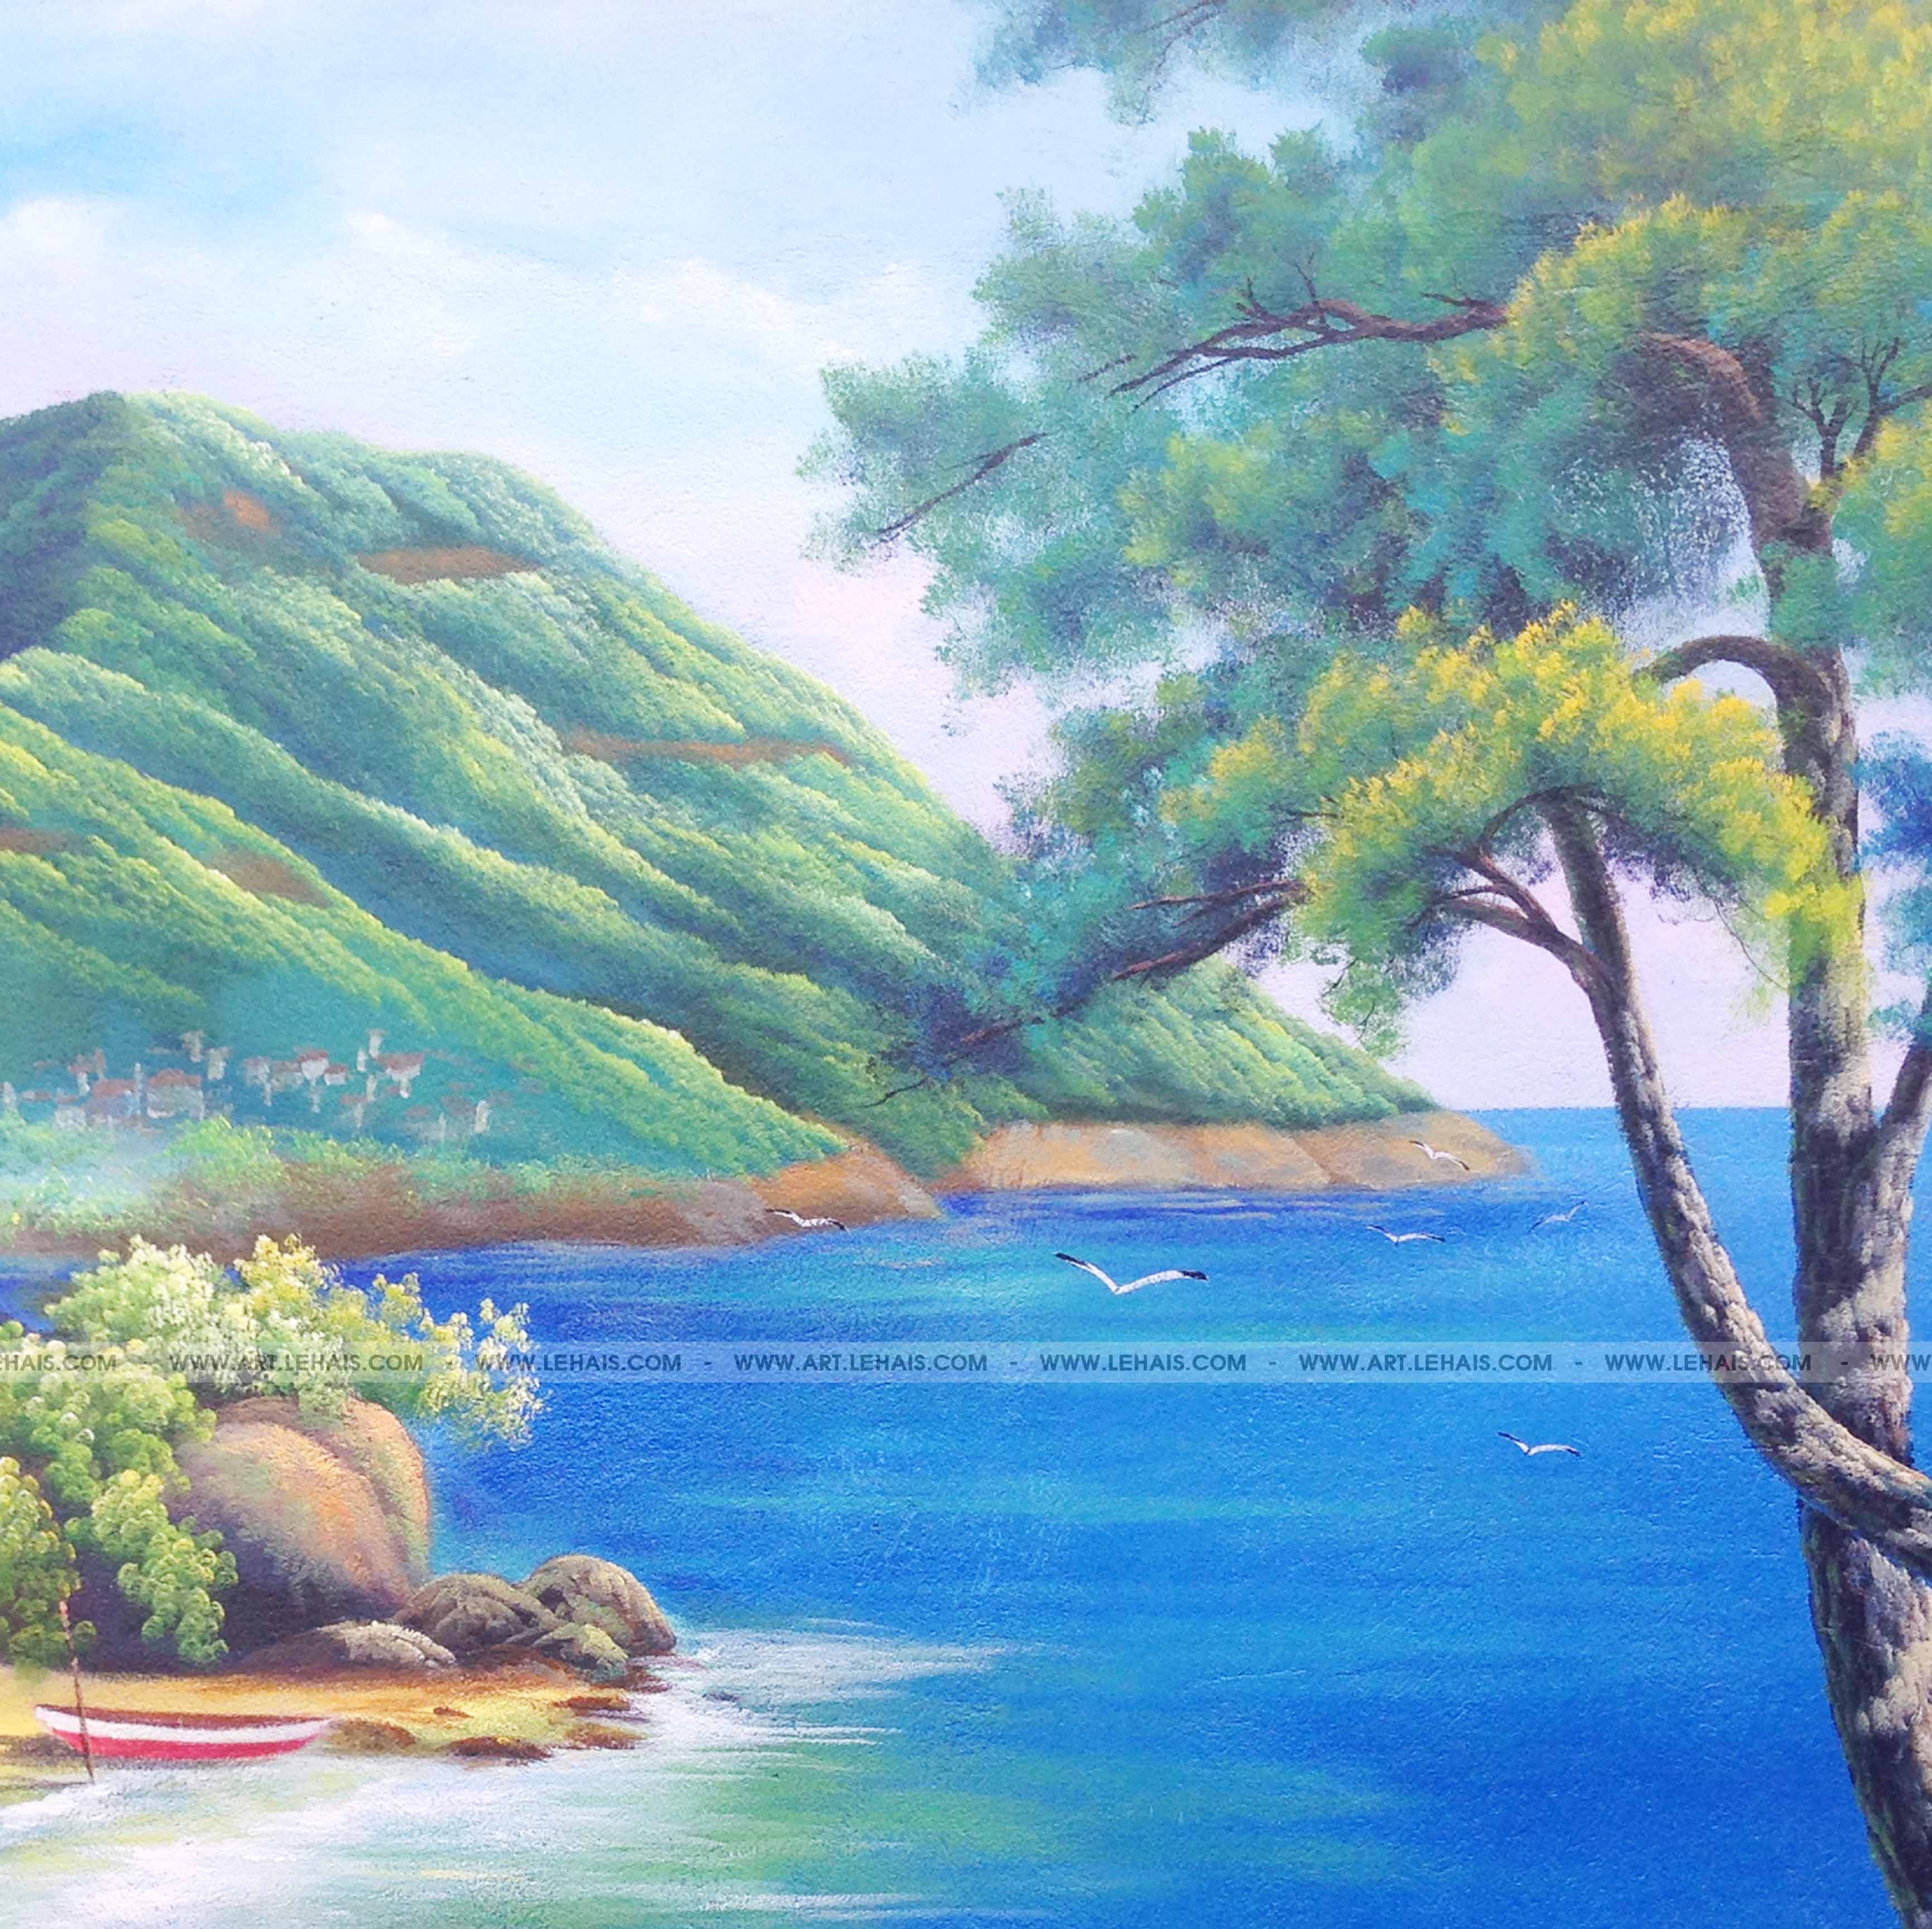 Vẽ tranh phong cảnh biển bằng MÀU NƯỚC đơn giản  how to draw easy scenery  with watercolor  YouTube